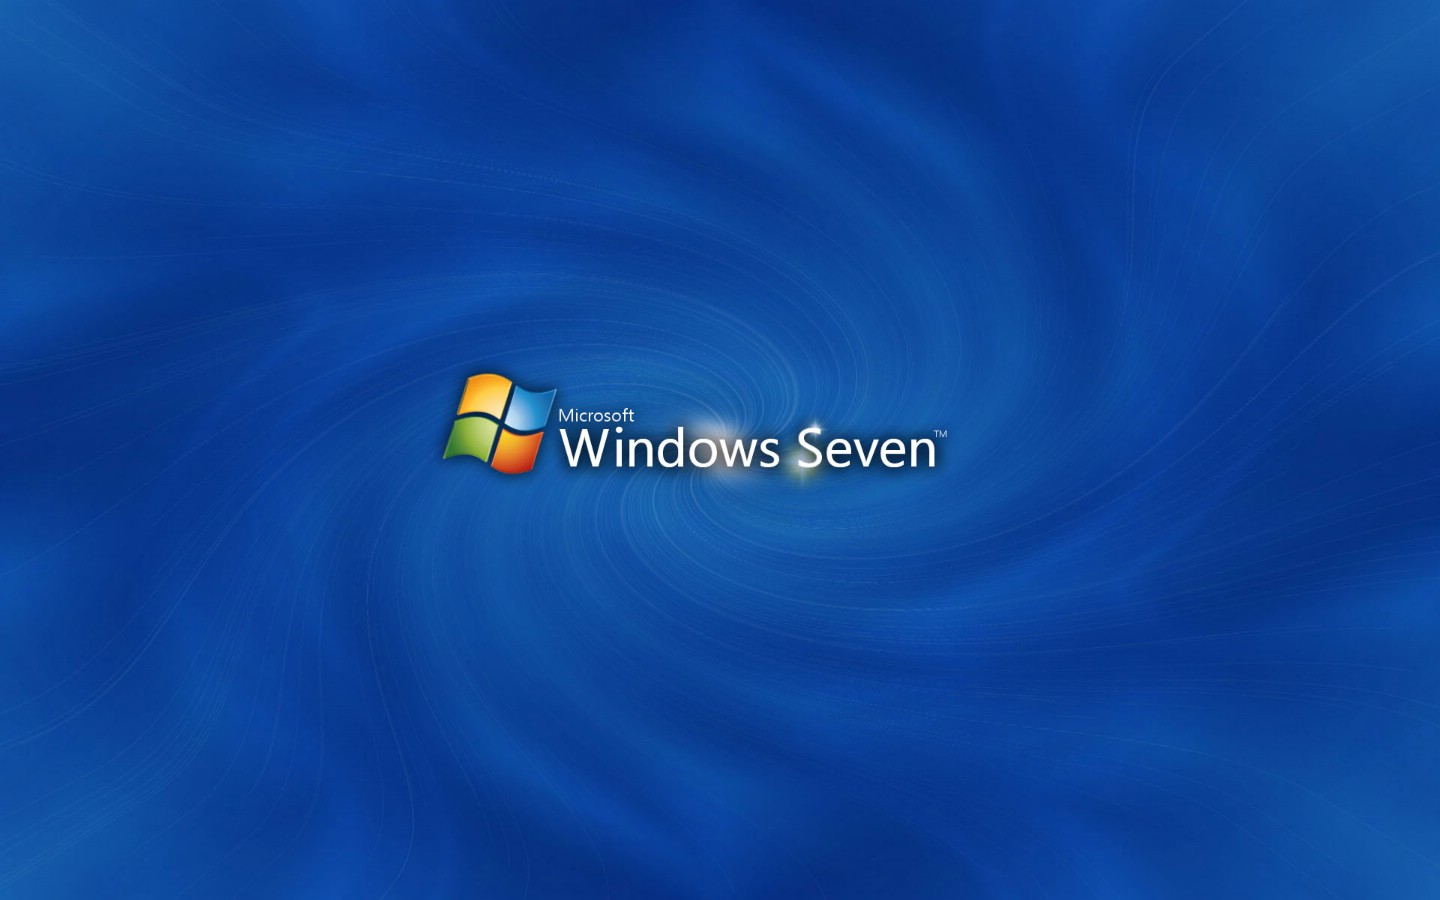 壁纸1440x900Windows7 3 8壁纸 Windows7壁纸 Windows7图片 Windows7素材 系统壁纸 系统图库 系统图片素材桌面壁纸